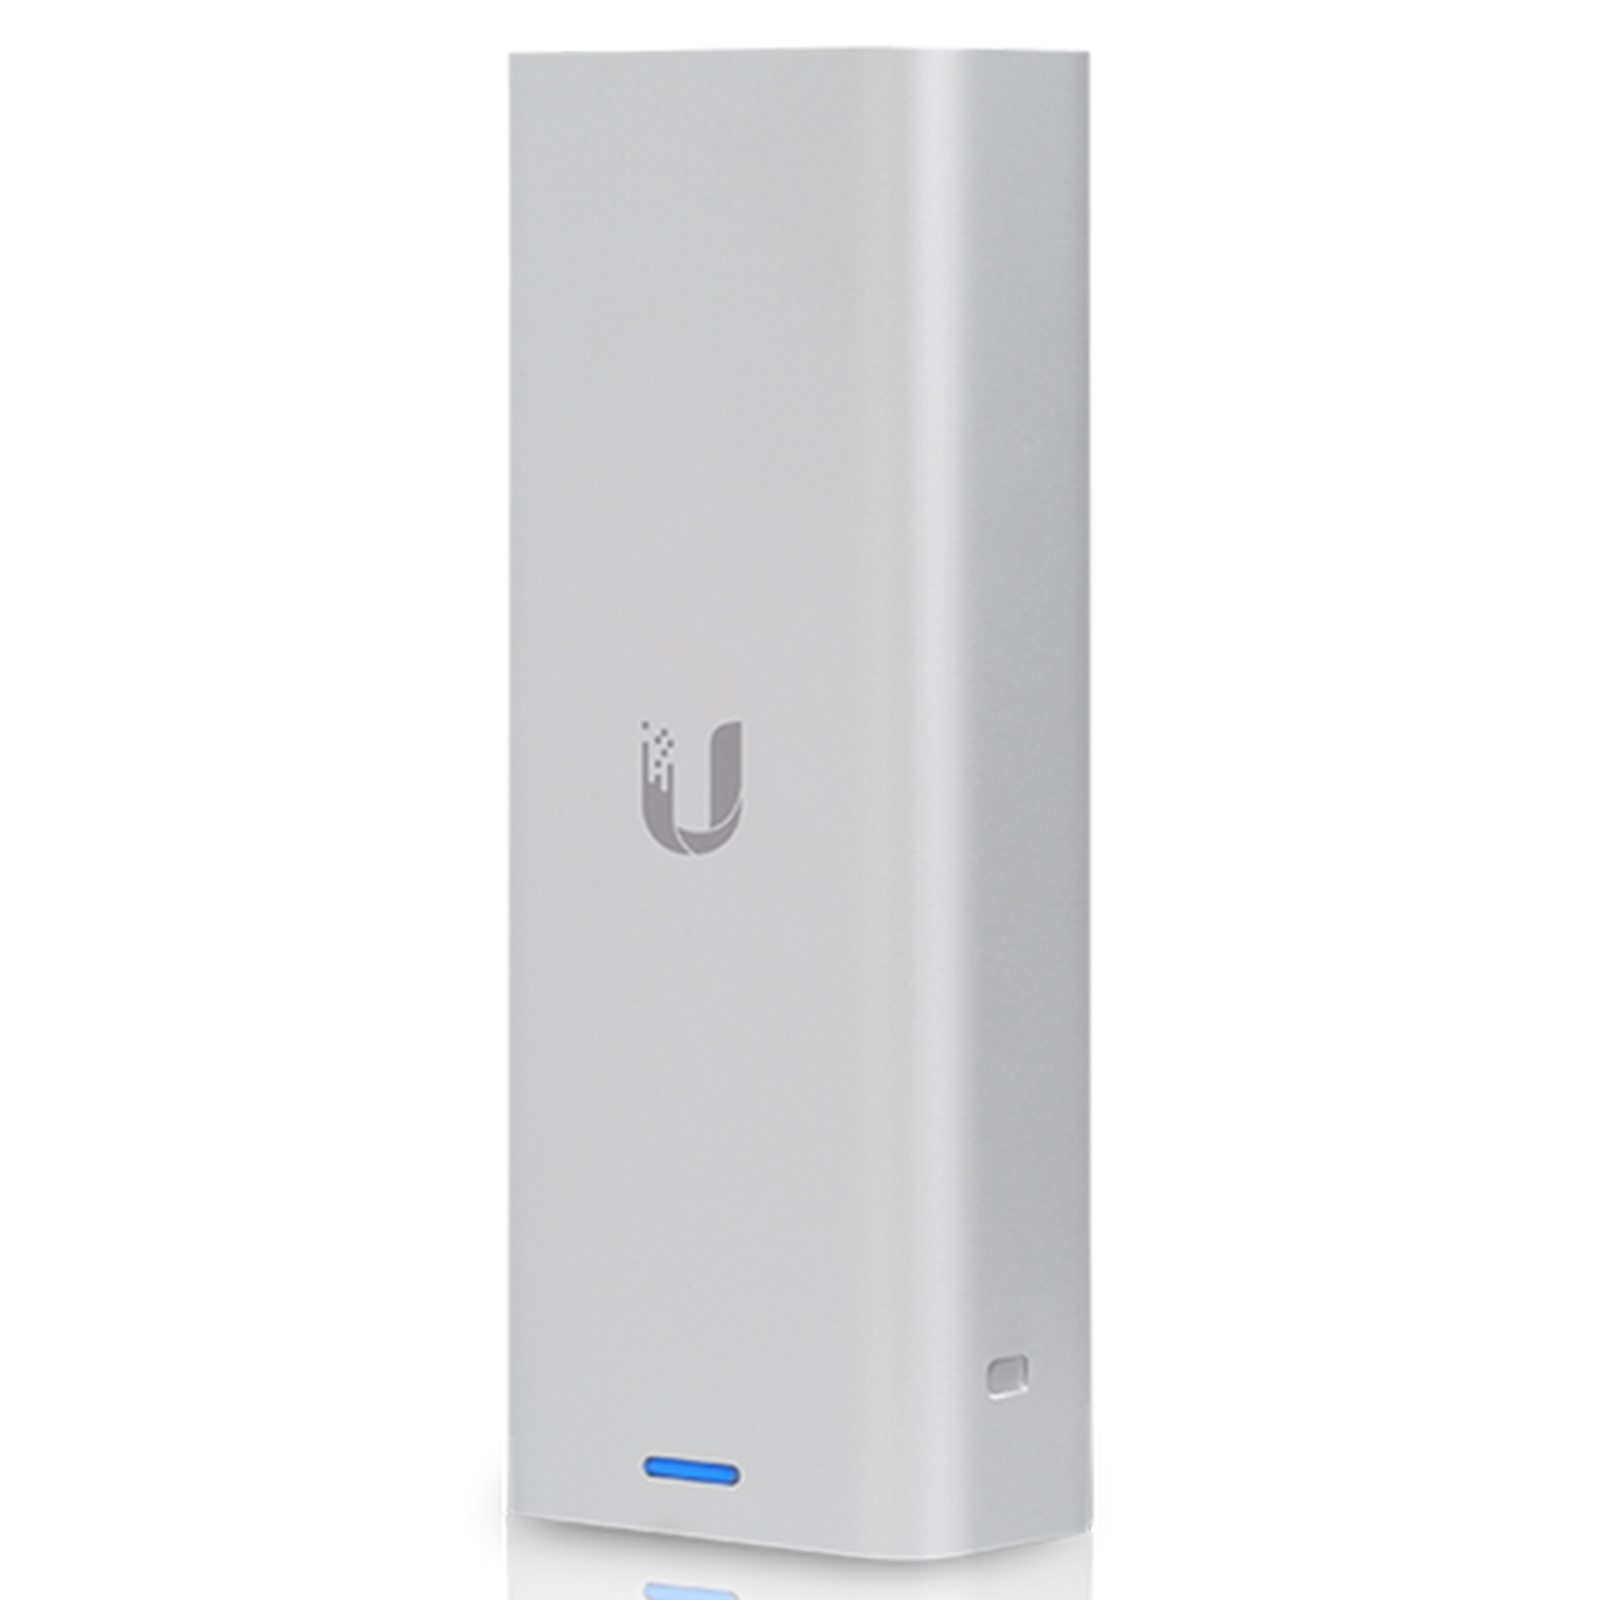 Ubiquiti UniFi Cloud Key Gen2 / Hardware Controller / Verwaltet bis 40  Access Points / UCK-G2 (UCK-G2) | Günstig kaufen mit Beratung und Support